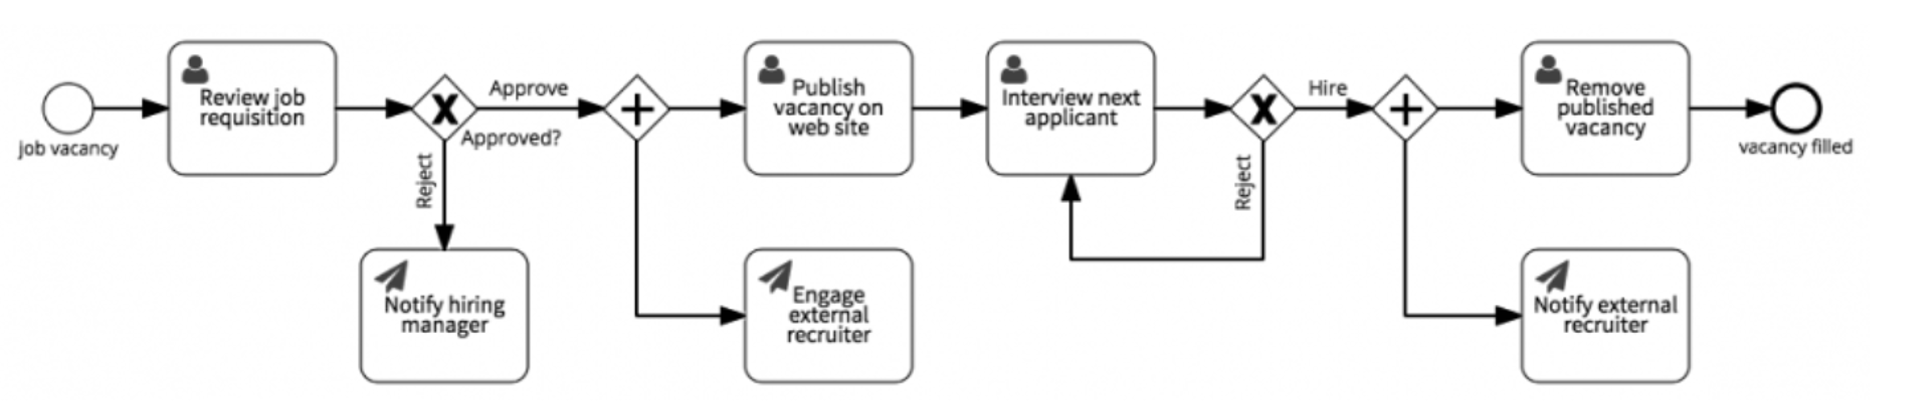 Fill Job Vacancy Workflow Example